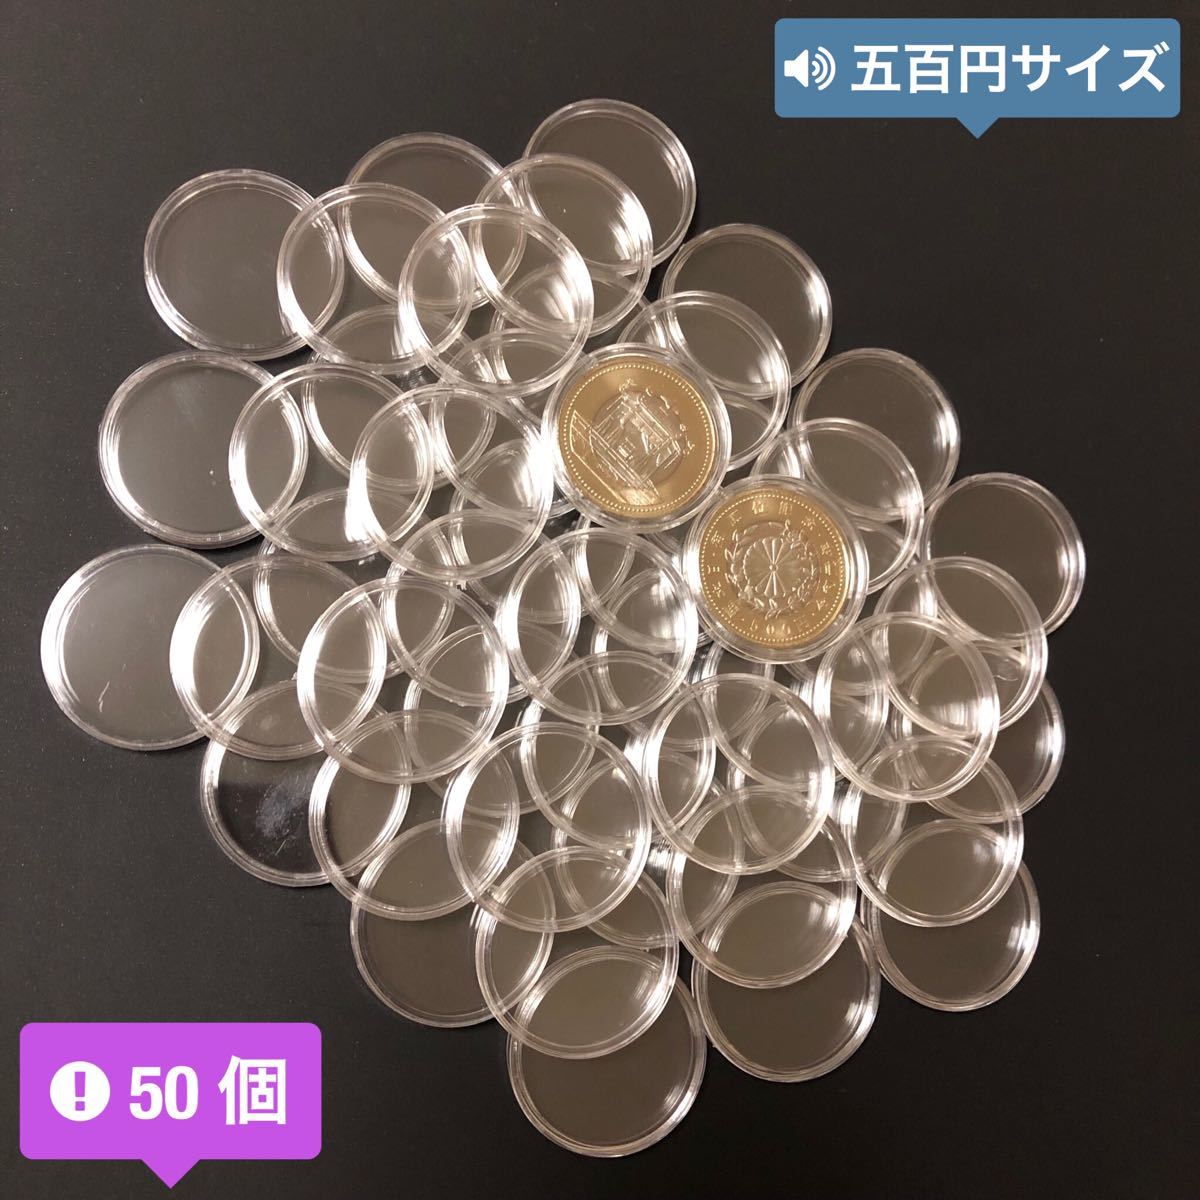 コインカプセル コインケース 東京2020 オリンピック 御即位 記念硬貨 収納